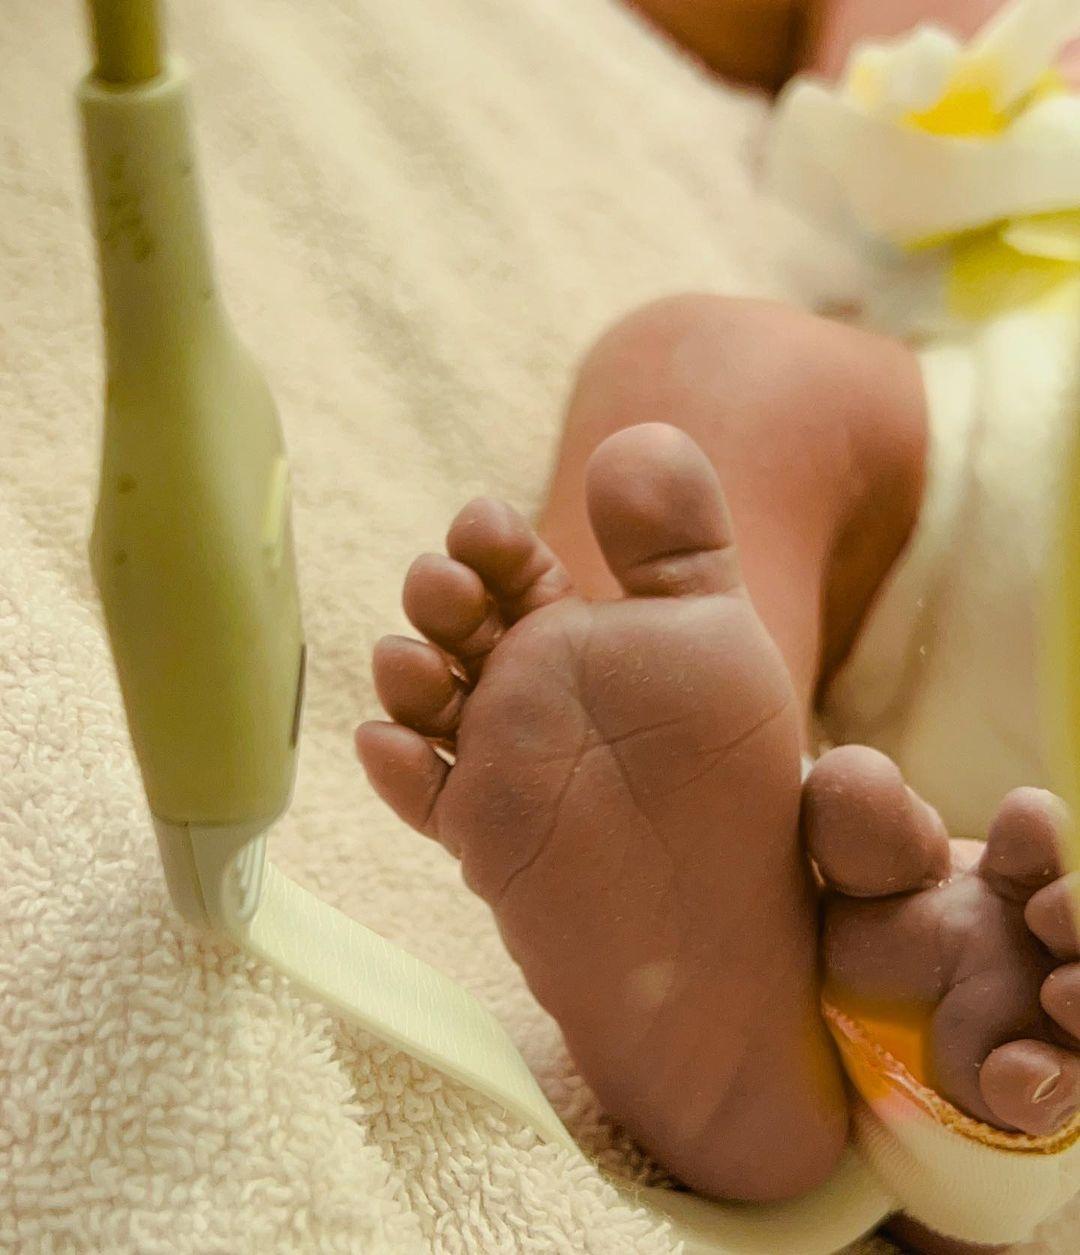 Βασιλική Νταντά: Έγινε μητέρα και δημοσίευσε την πρώτη φωτογραφία από το μαιευτήριο